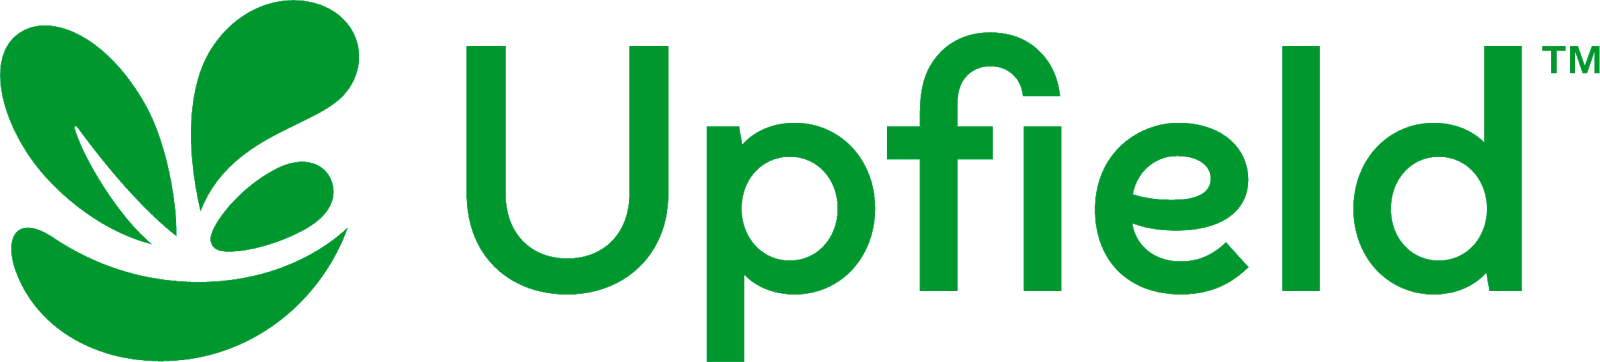 Upfield-logo-2018-1